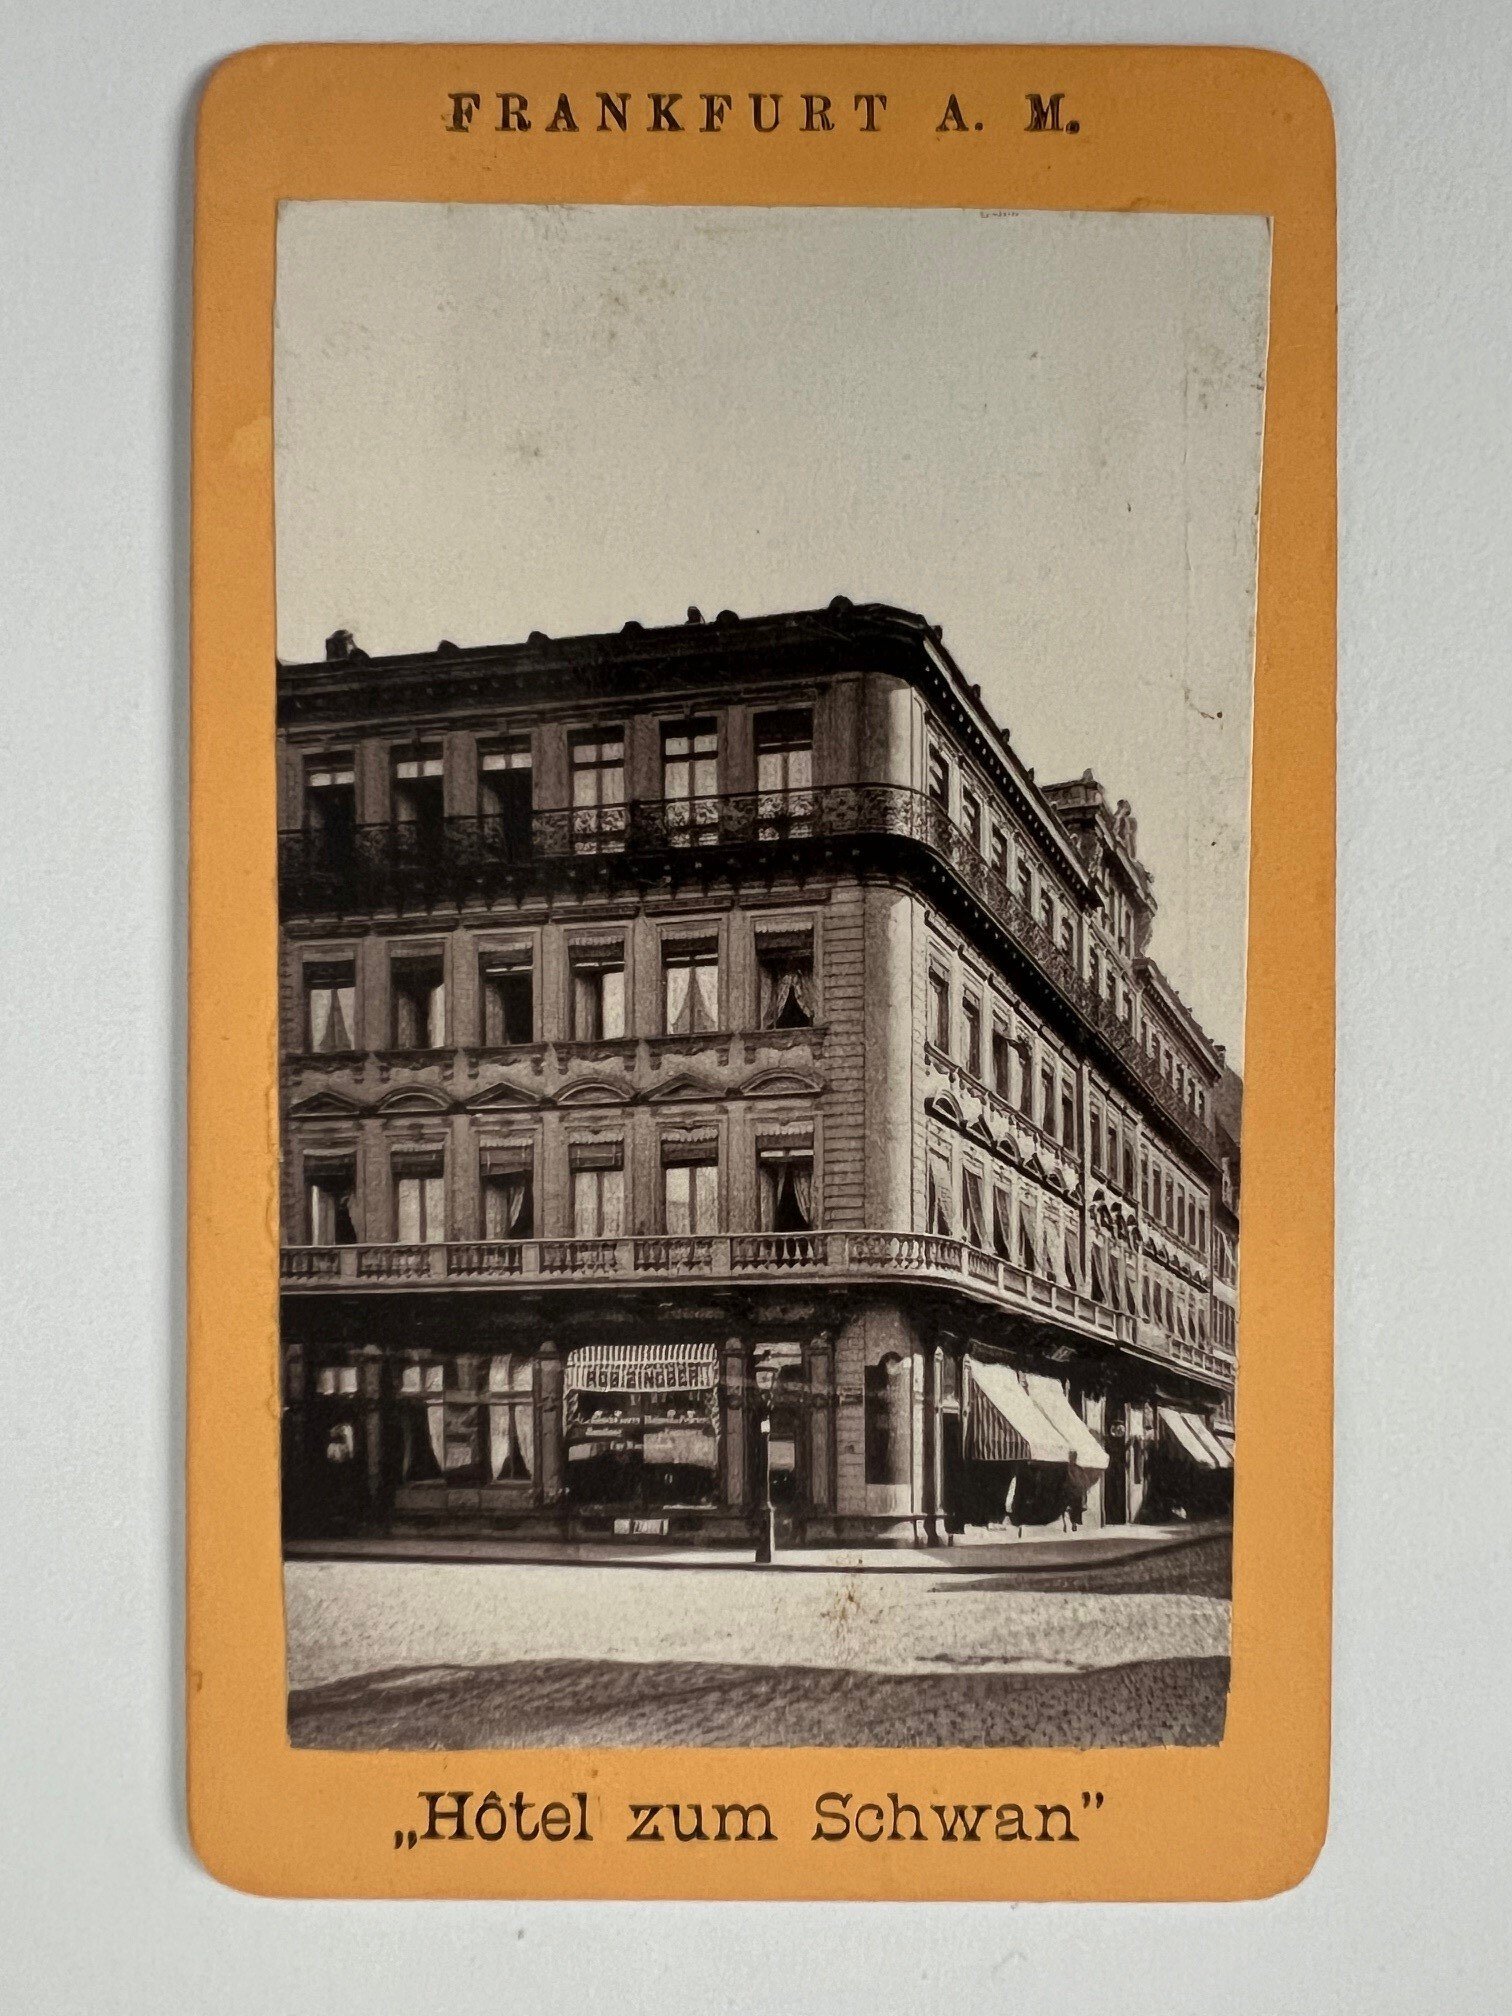 CdV, Unbekannter Fotograf, Frankfurt, Hotel zum Schwan, ca. 1878. (Taunus-Rhein-Main - Regionalgeschichtliche Sammlung Dr. Stefan Naas CC BY-NC-SA)